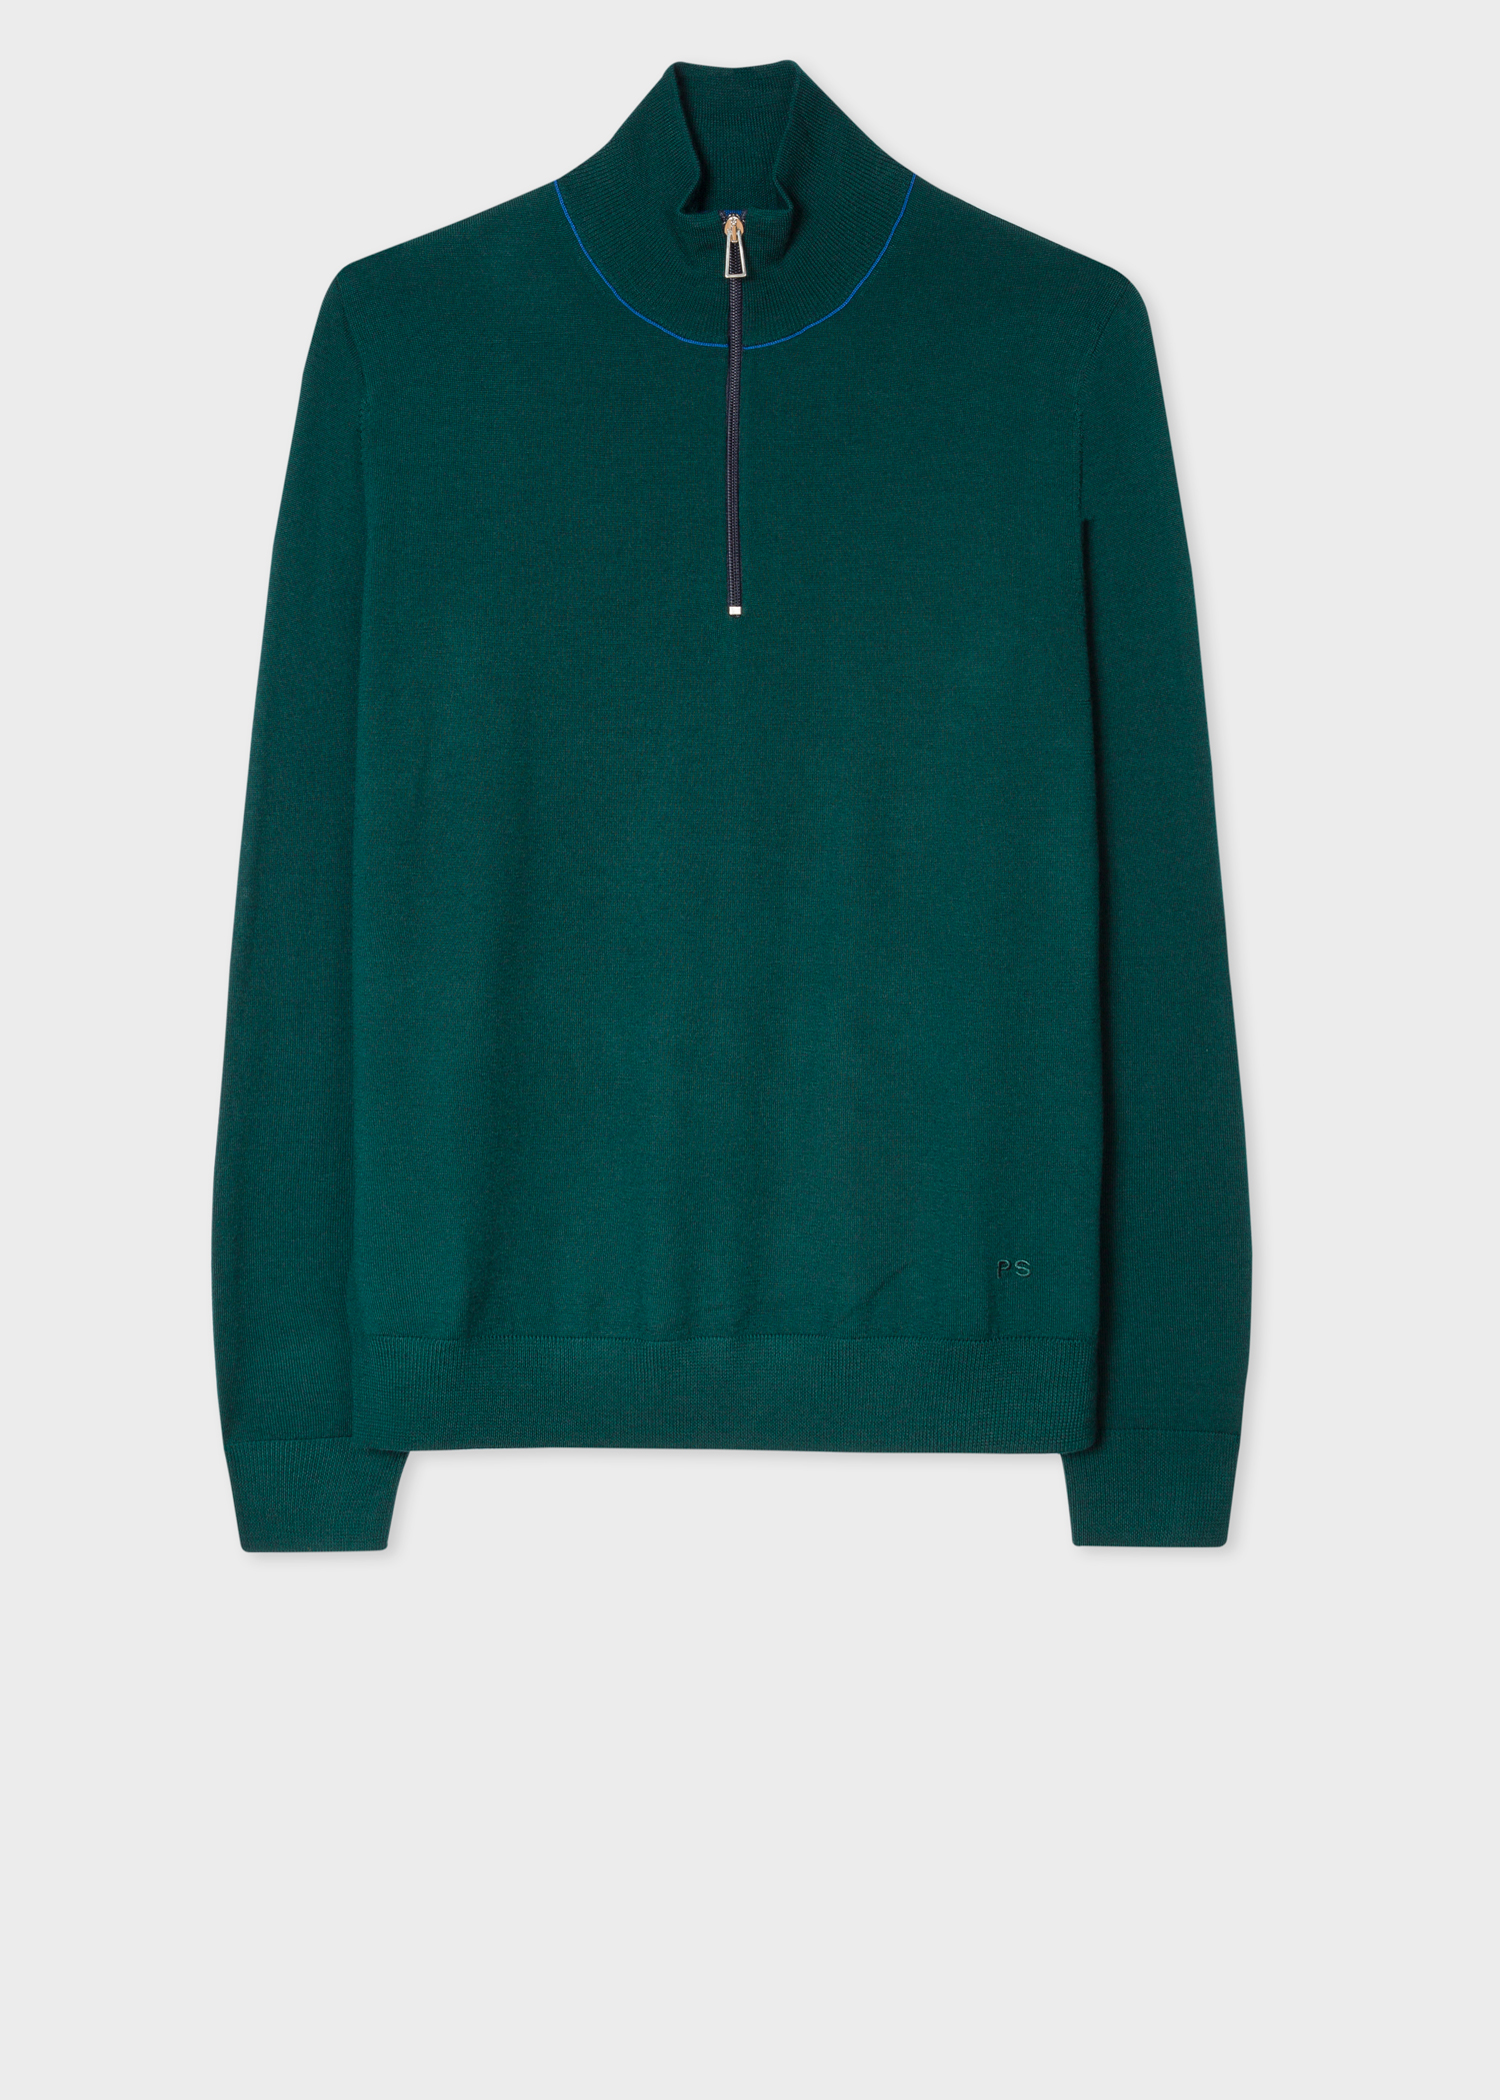 Front View - Men's Dark Green Half-Zip Merino Wool Sweater Paul Smith